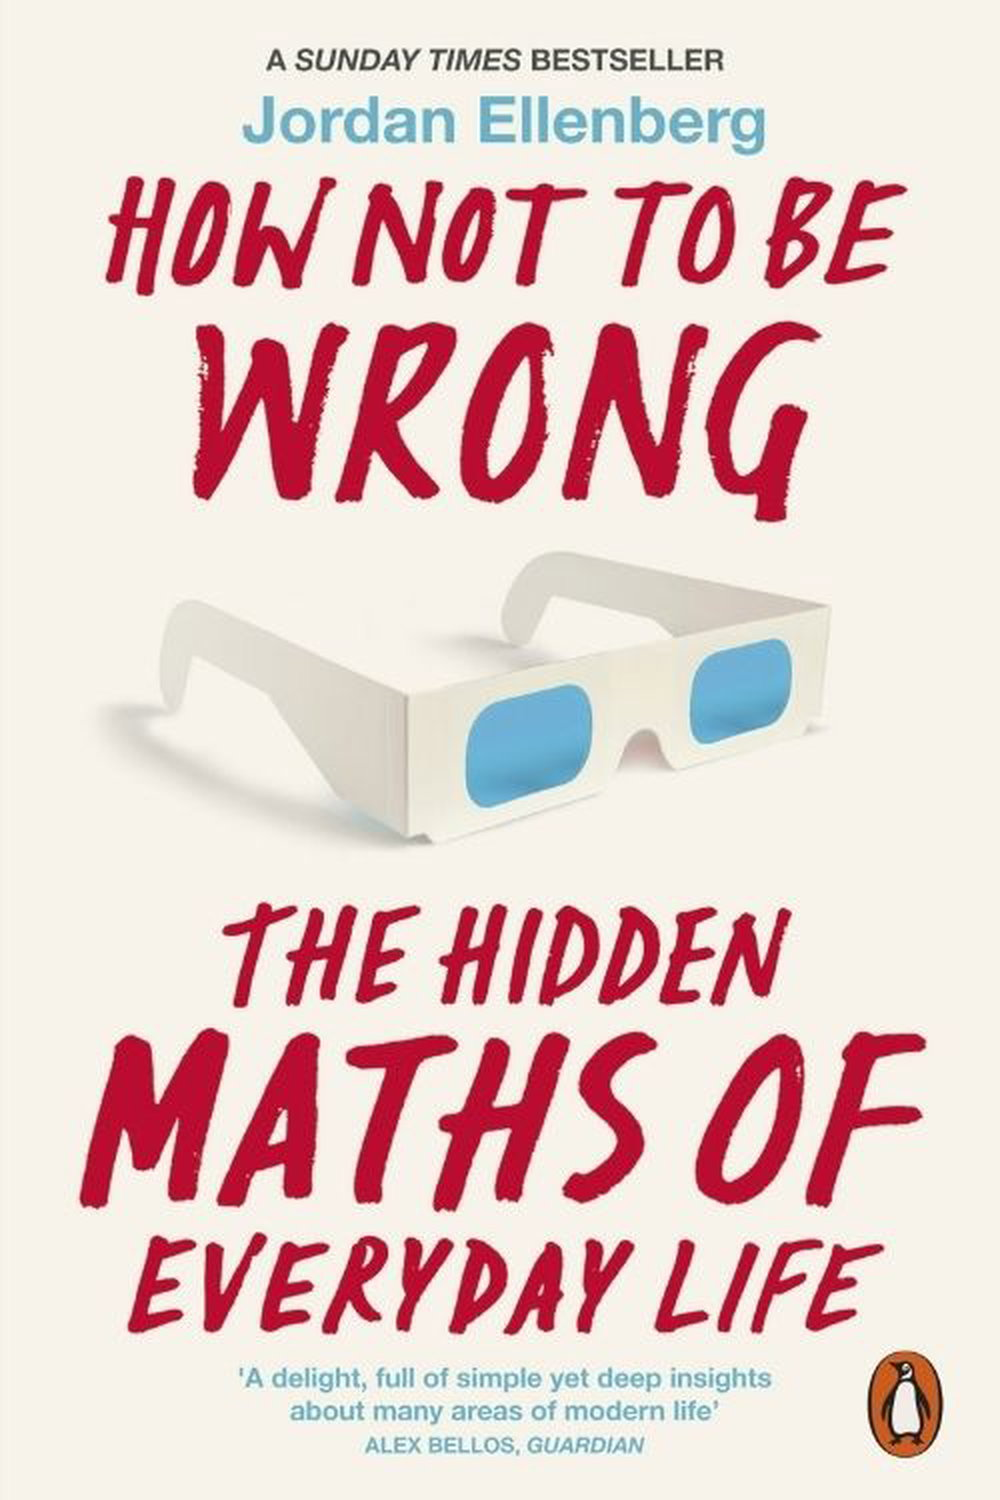 Lisez ces livres pour tomber amoureux des mathématiques - Les mathématiques cachées de la vie quotidienne